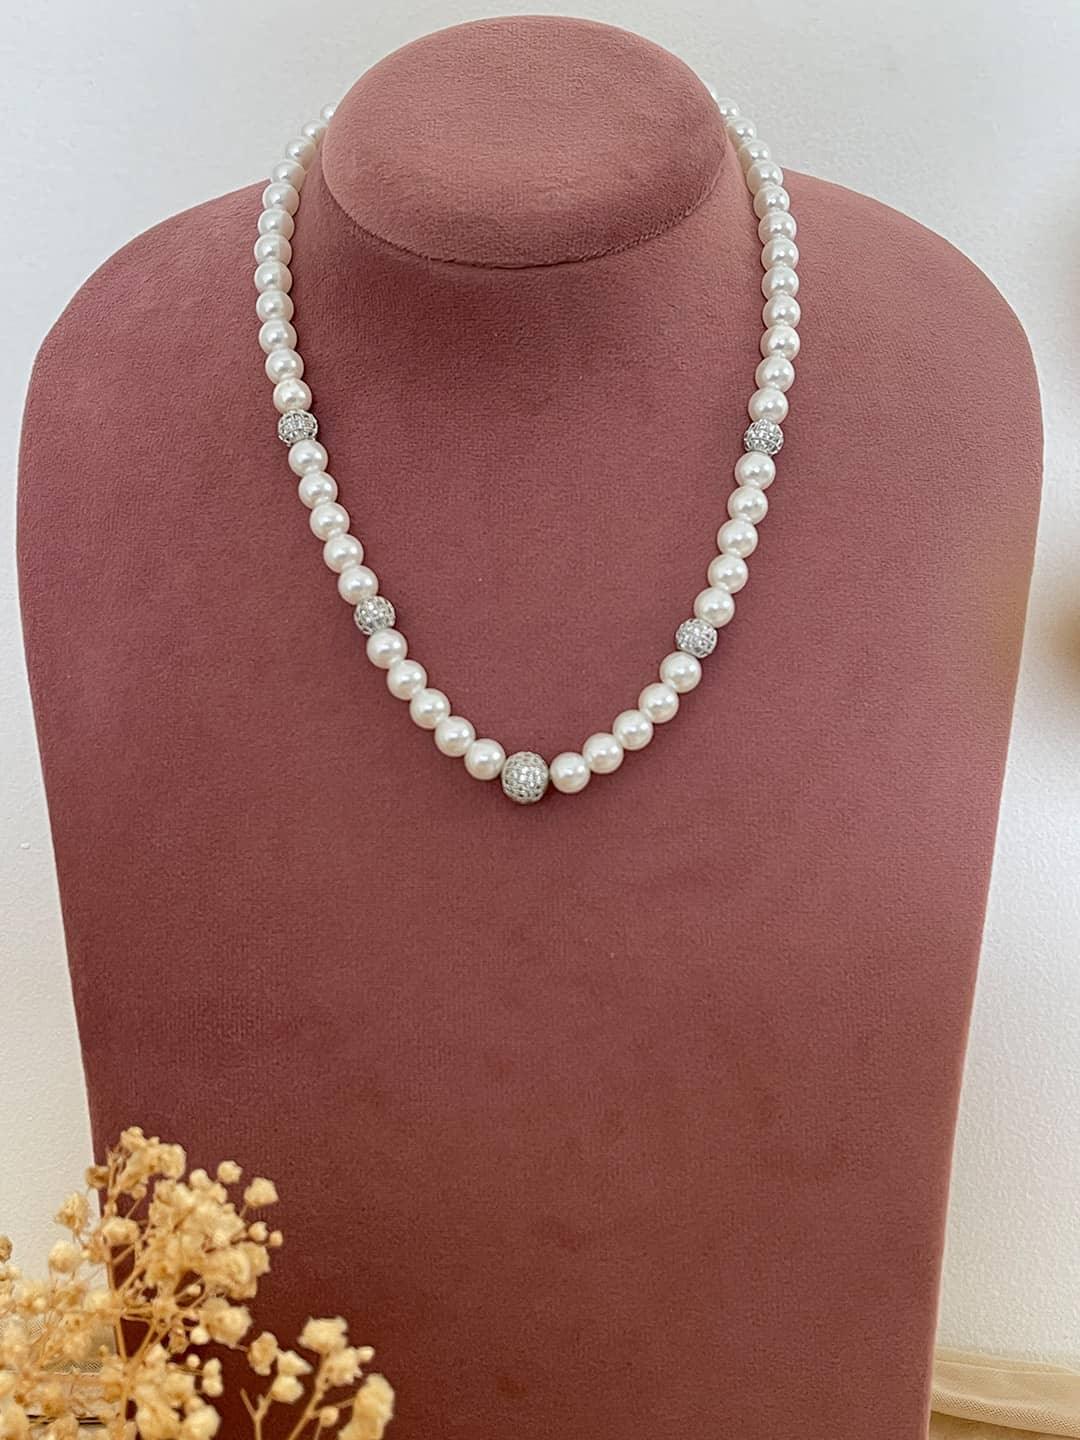 Ishhaara White Shell Pearls With 3 Diamond Balls